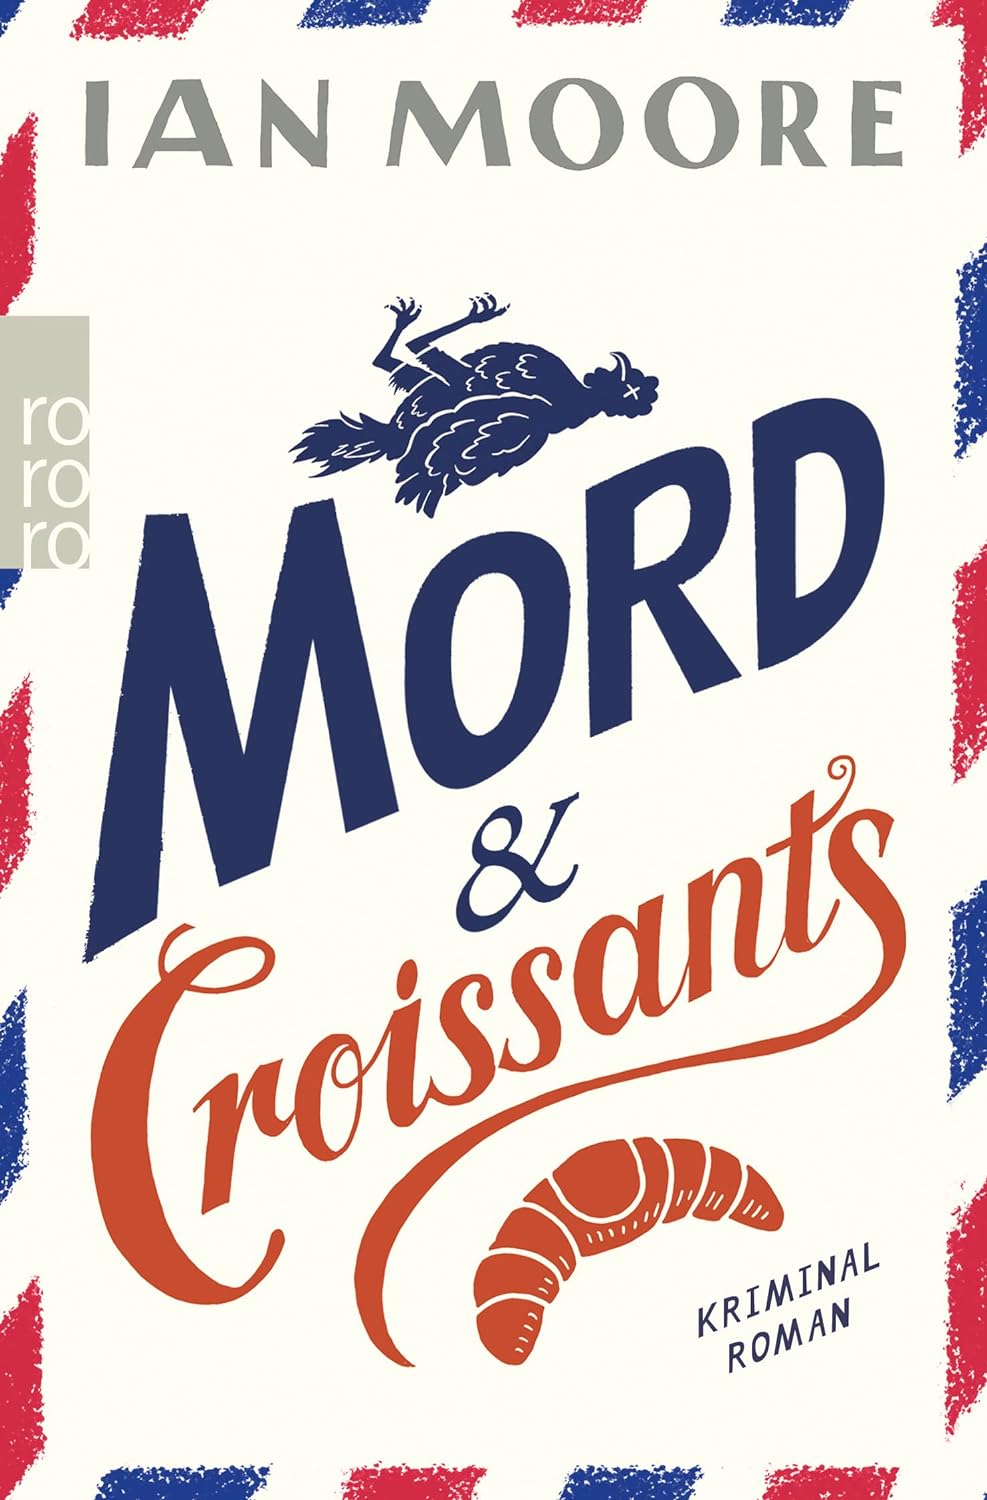 Ian Moore. Mord & Croissants